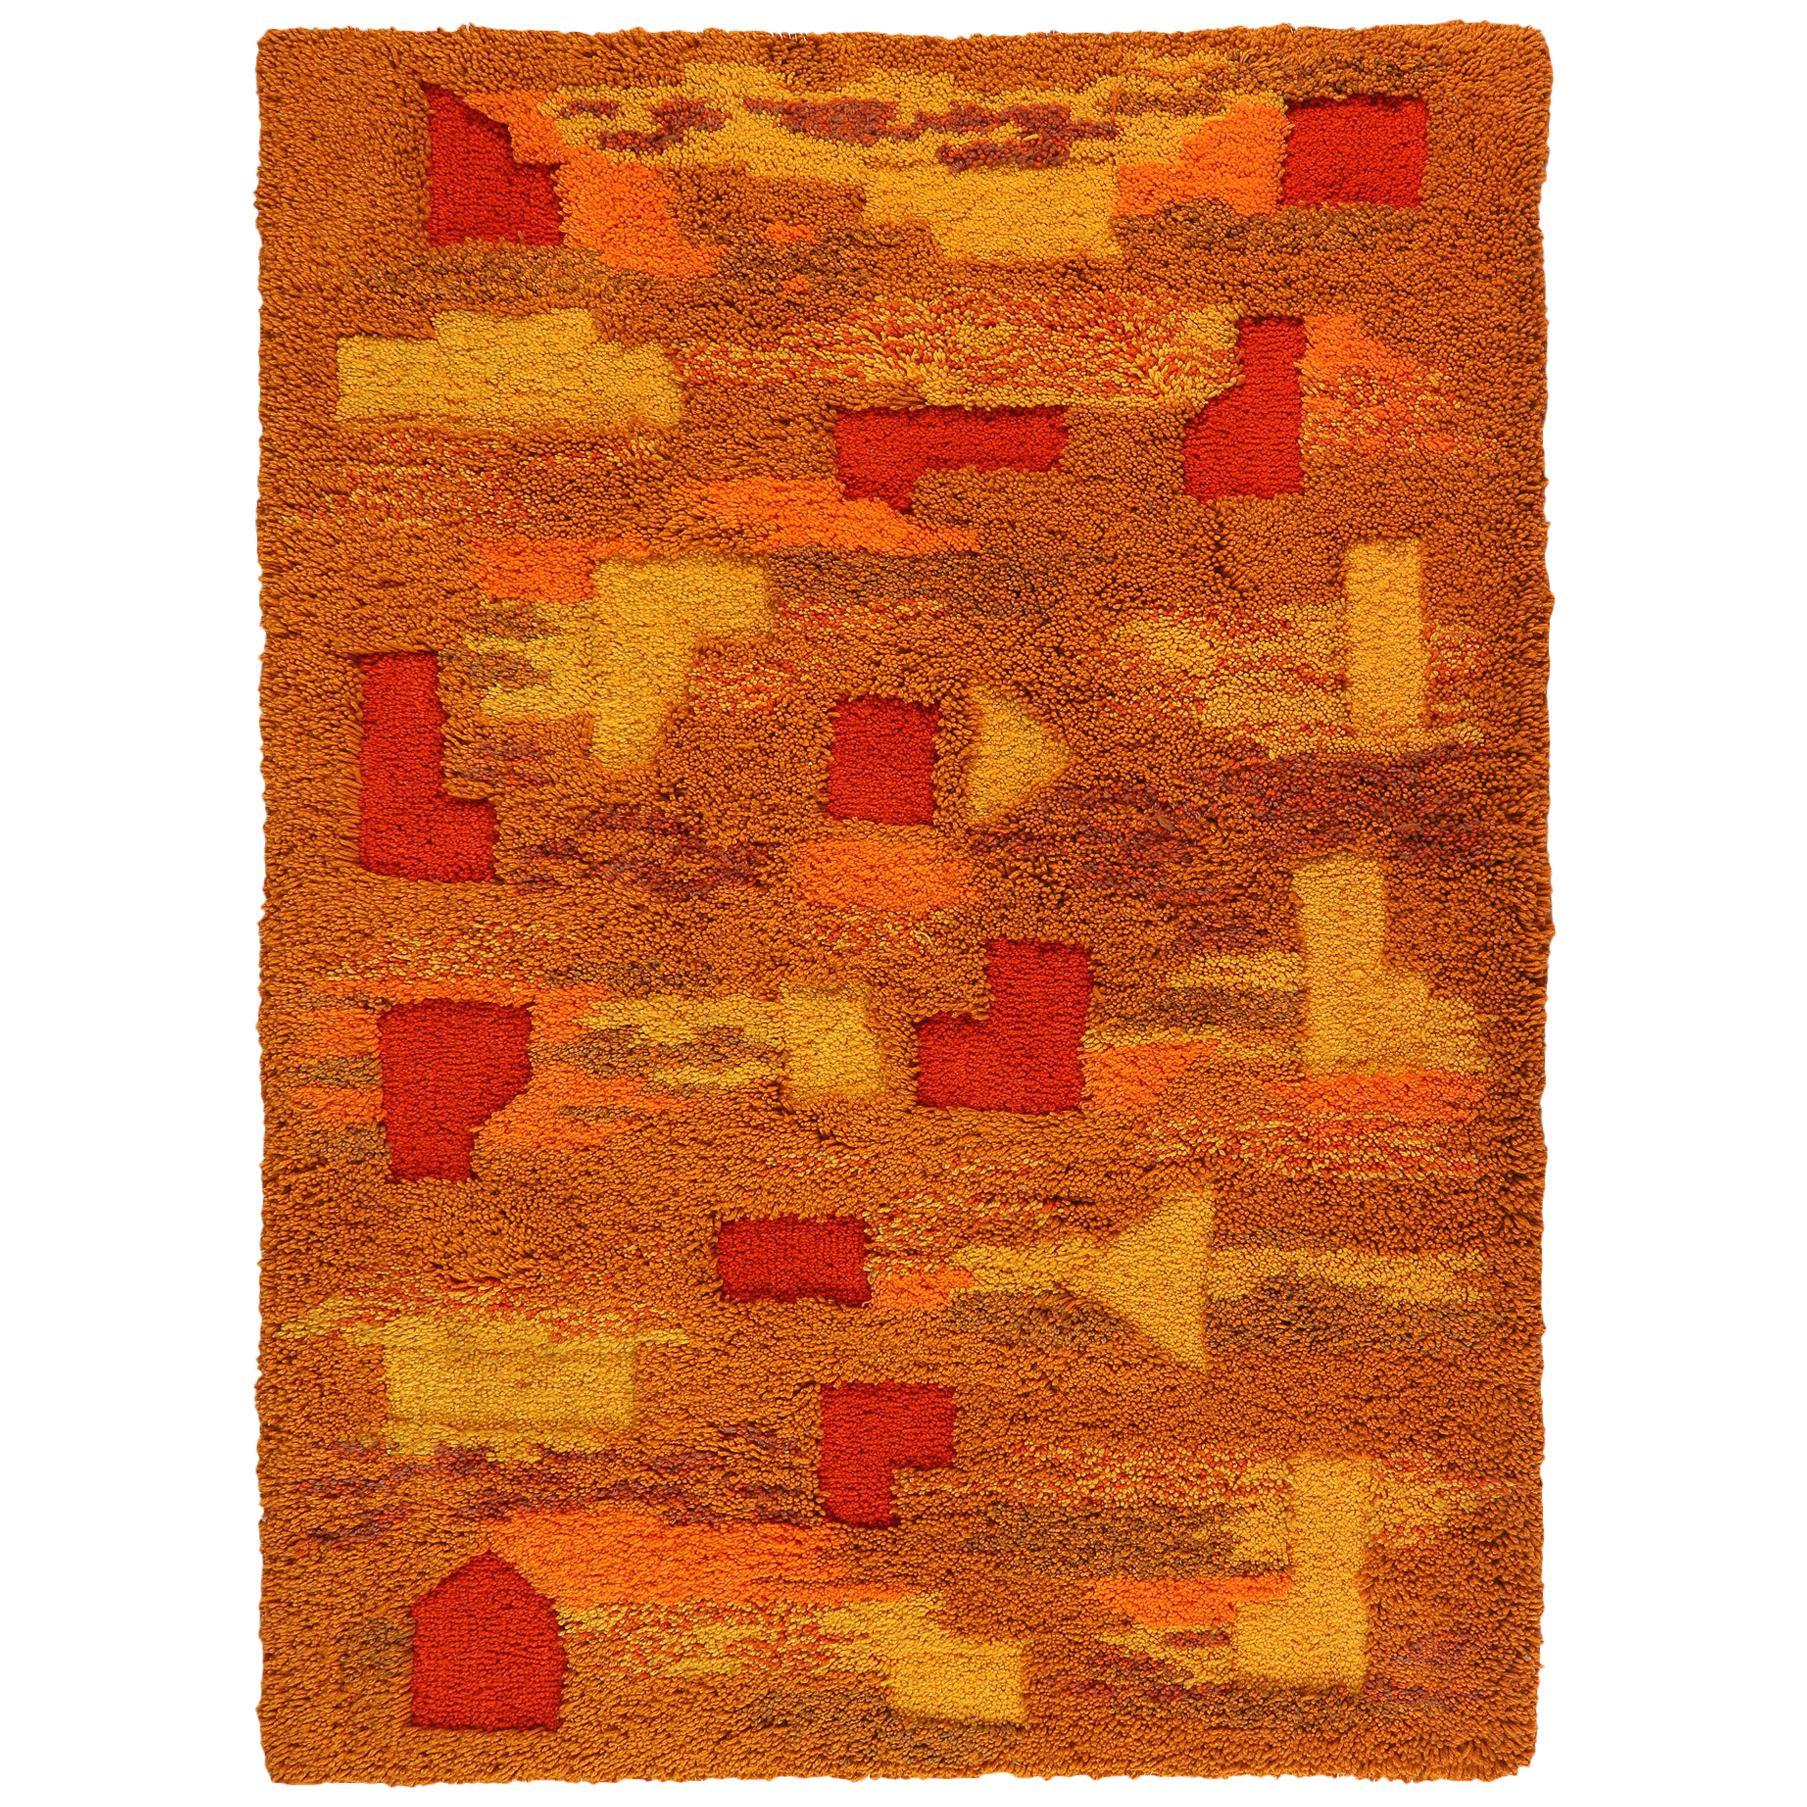 Op Pop Mod, gewebter Wandteppich oder Teppich, in Orange und Gelb